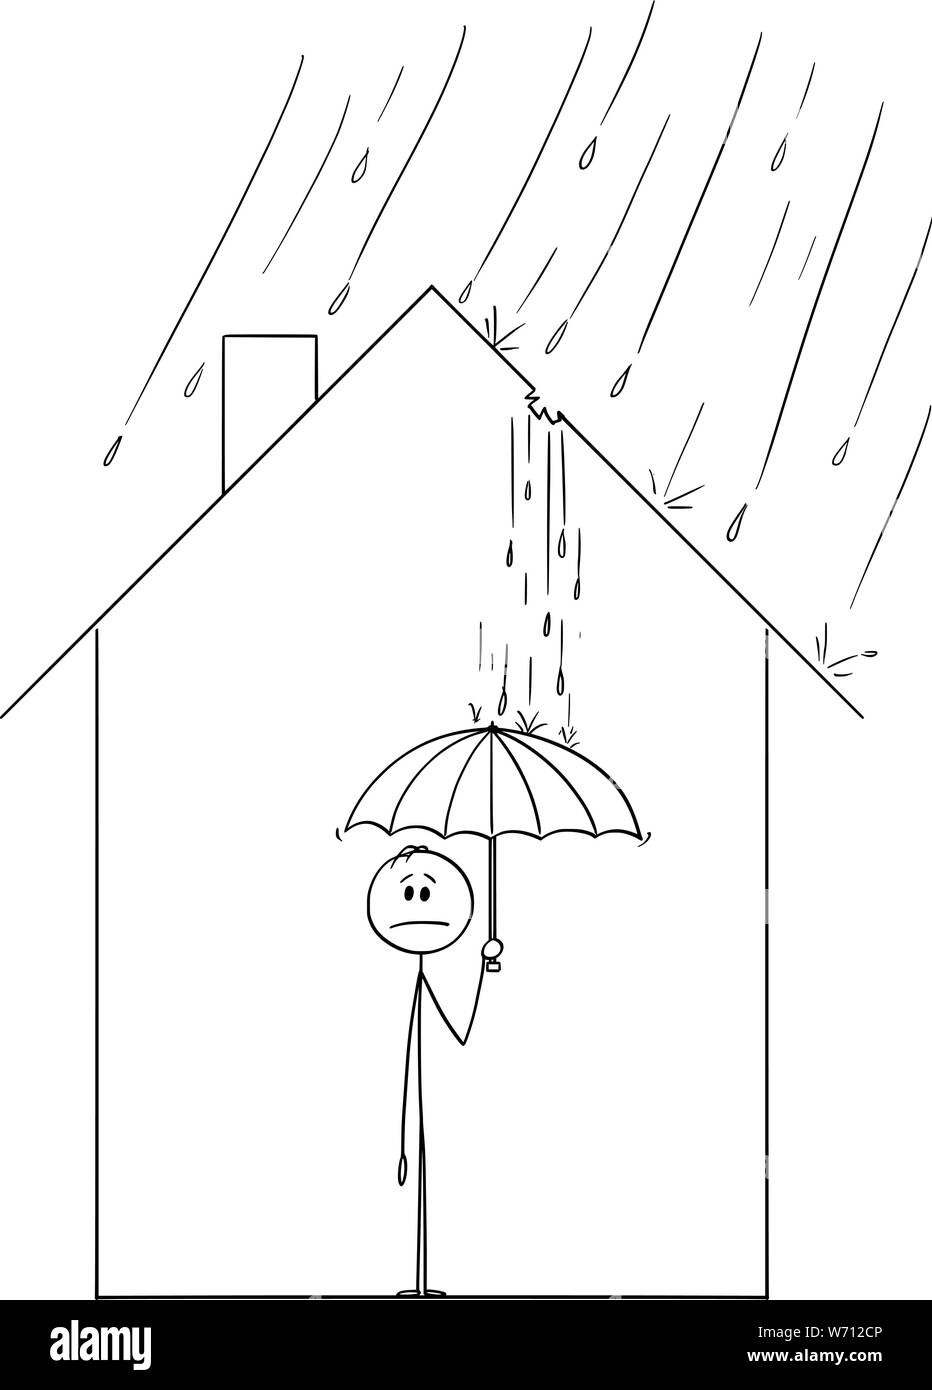 Vector cartoon stick figure dessin illustration conceptuelle de l'homme frustré holding umbrella à l'intérieur de sa maison de famille, parce que la pluie s'en vient à travers le trou dans le toit. Illustration de Vecteur